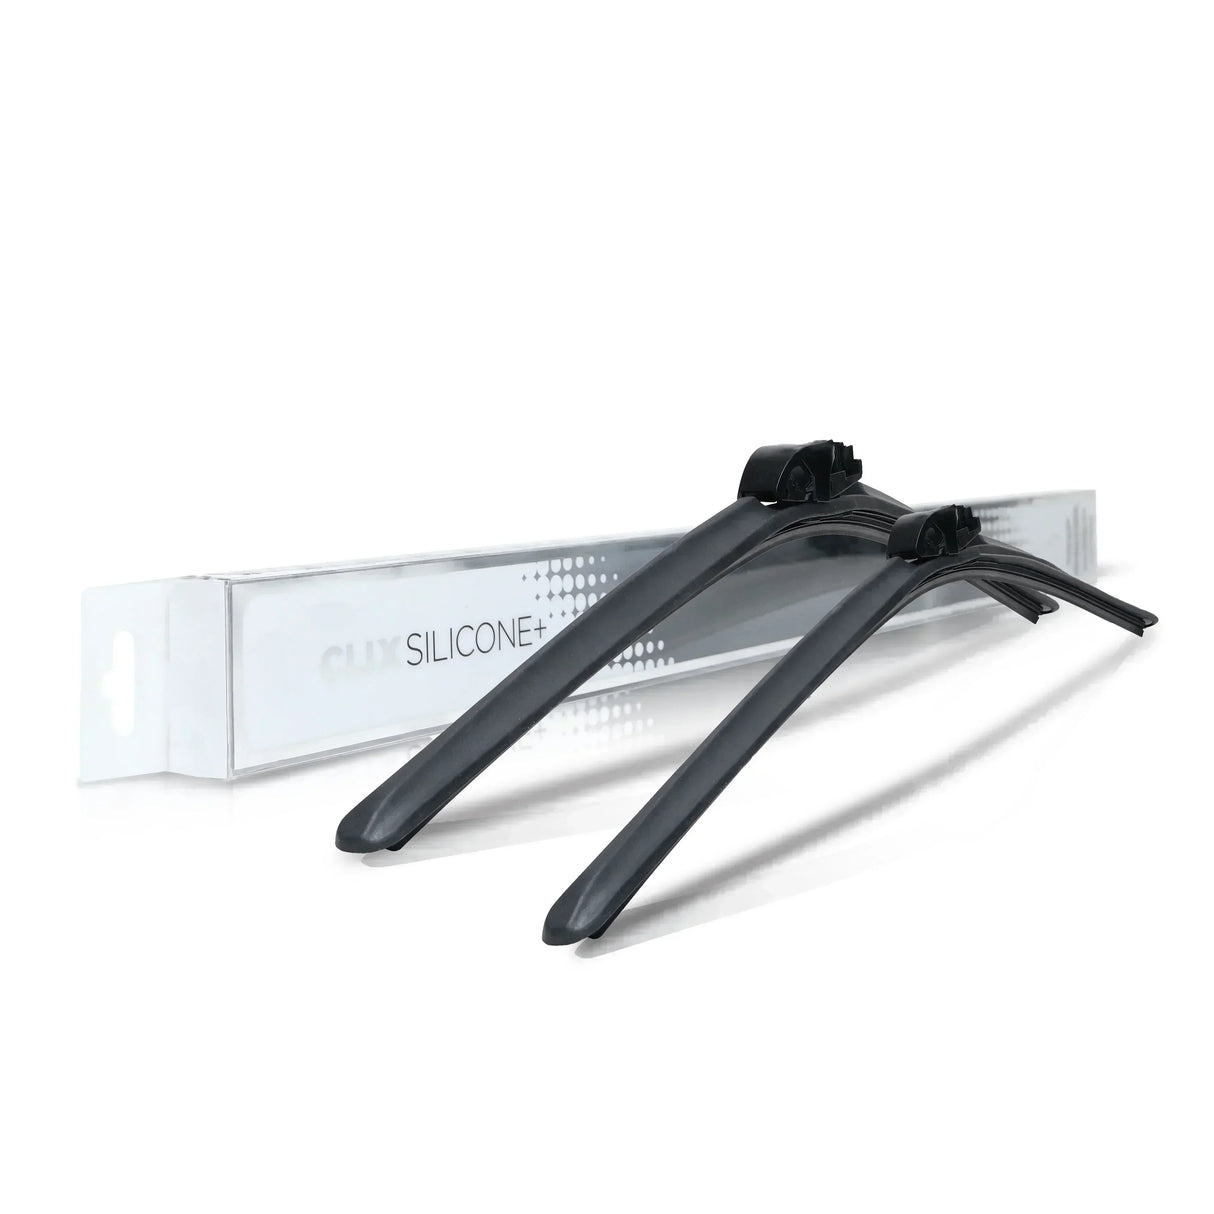 Scion XB Windshield Wiper Blades - ClixAuto